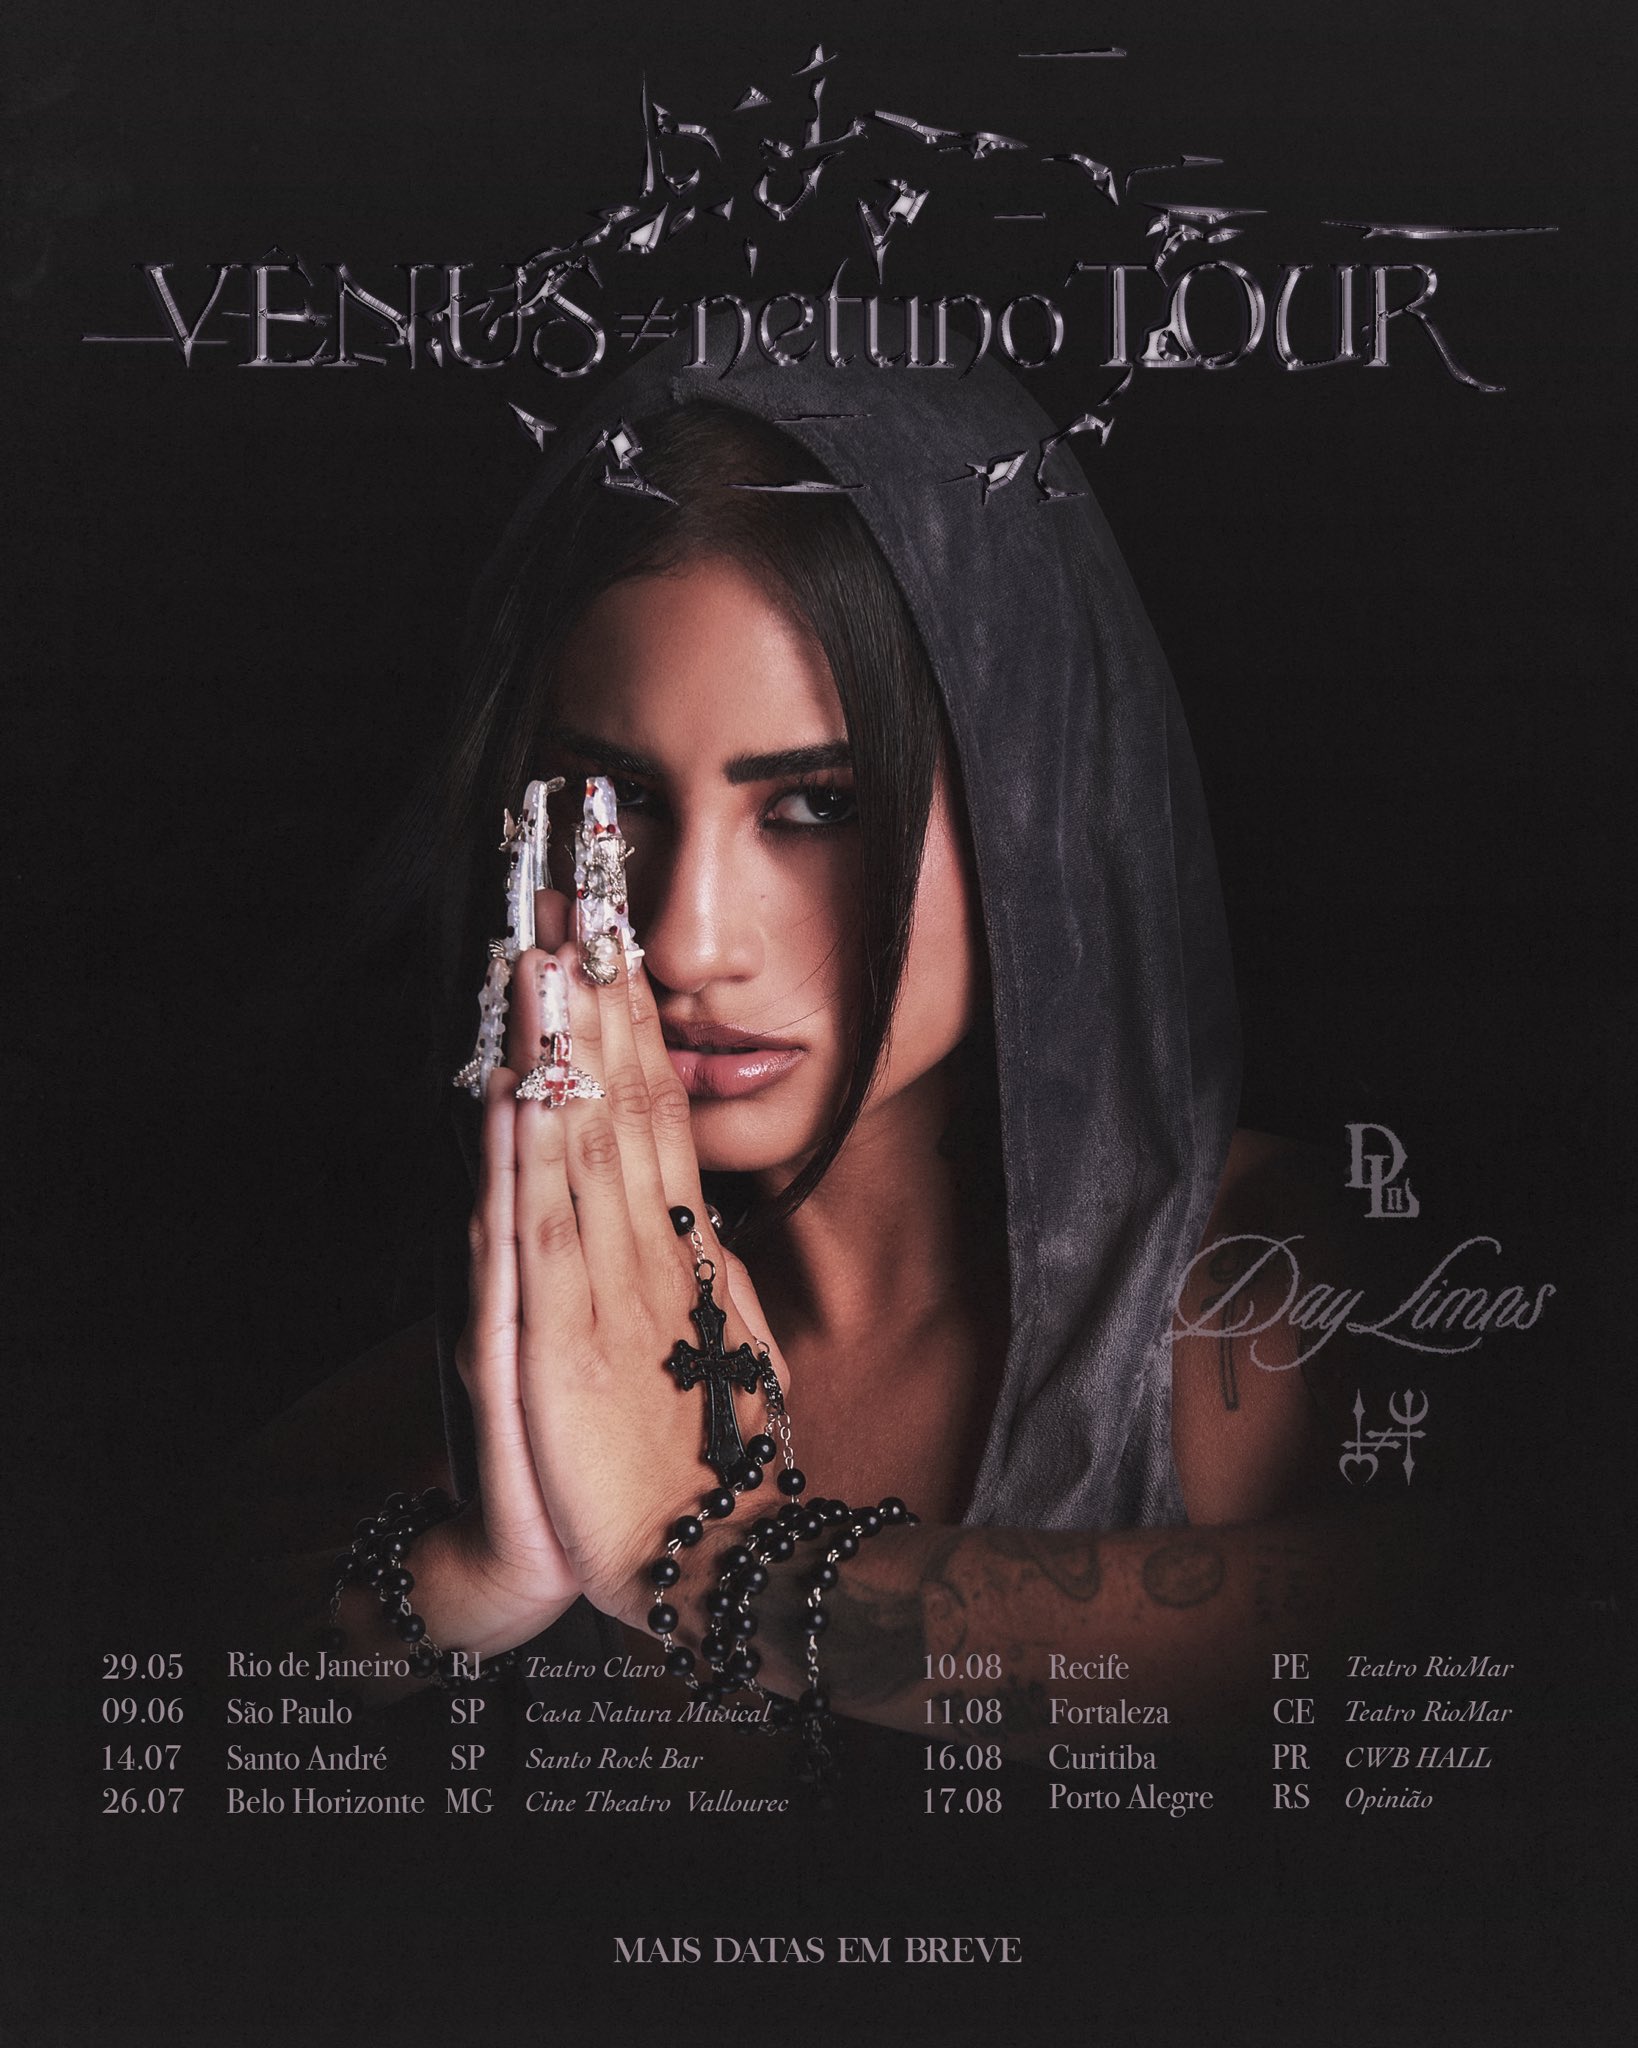 Day Limns na capa de divulgação da turnê VÊNUS≠netuno Tour.